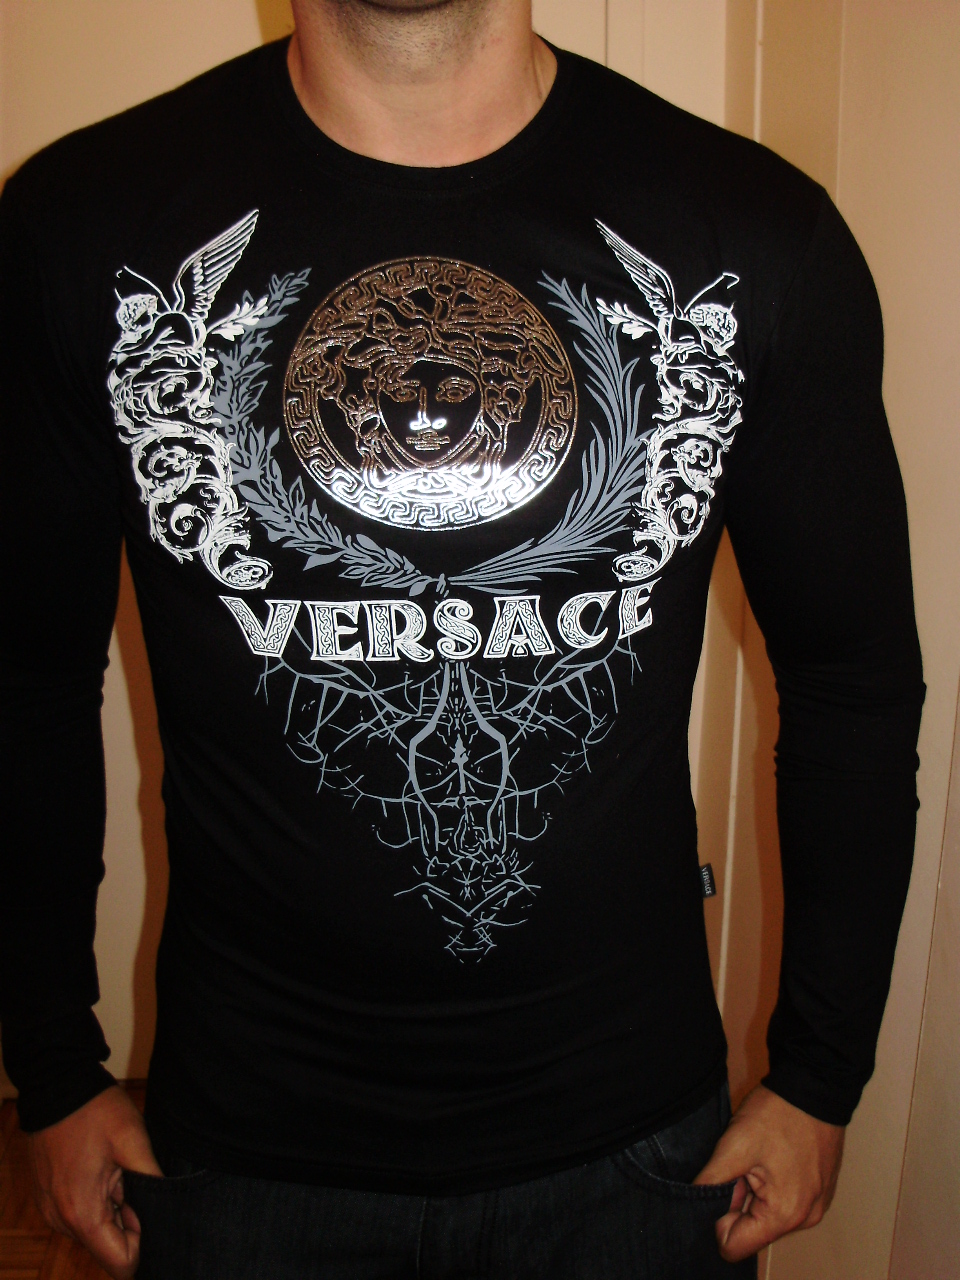 versace muscle shirt